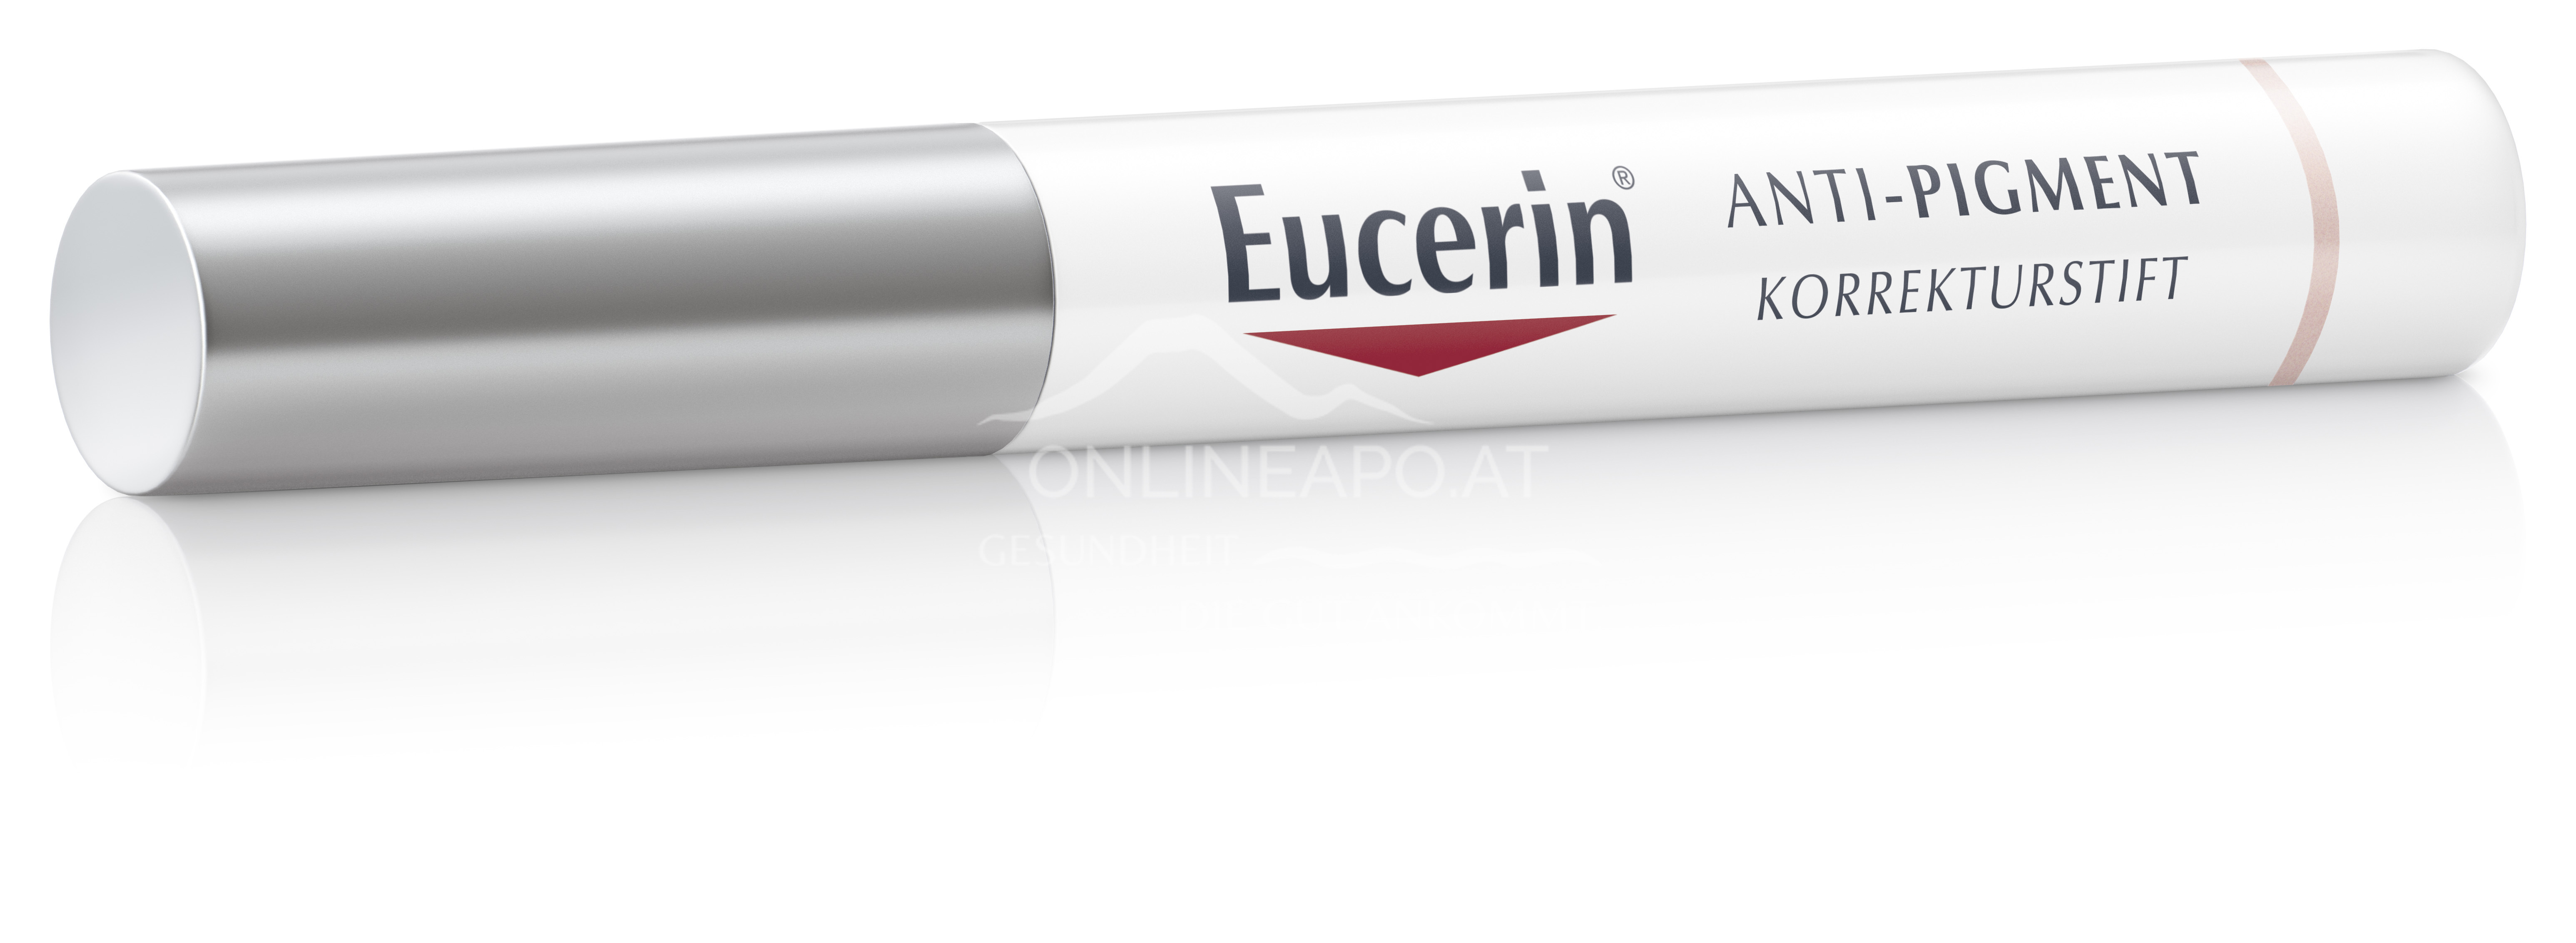 Eucerin® ANTI-PIGMENT Korrekturstift